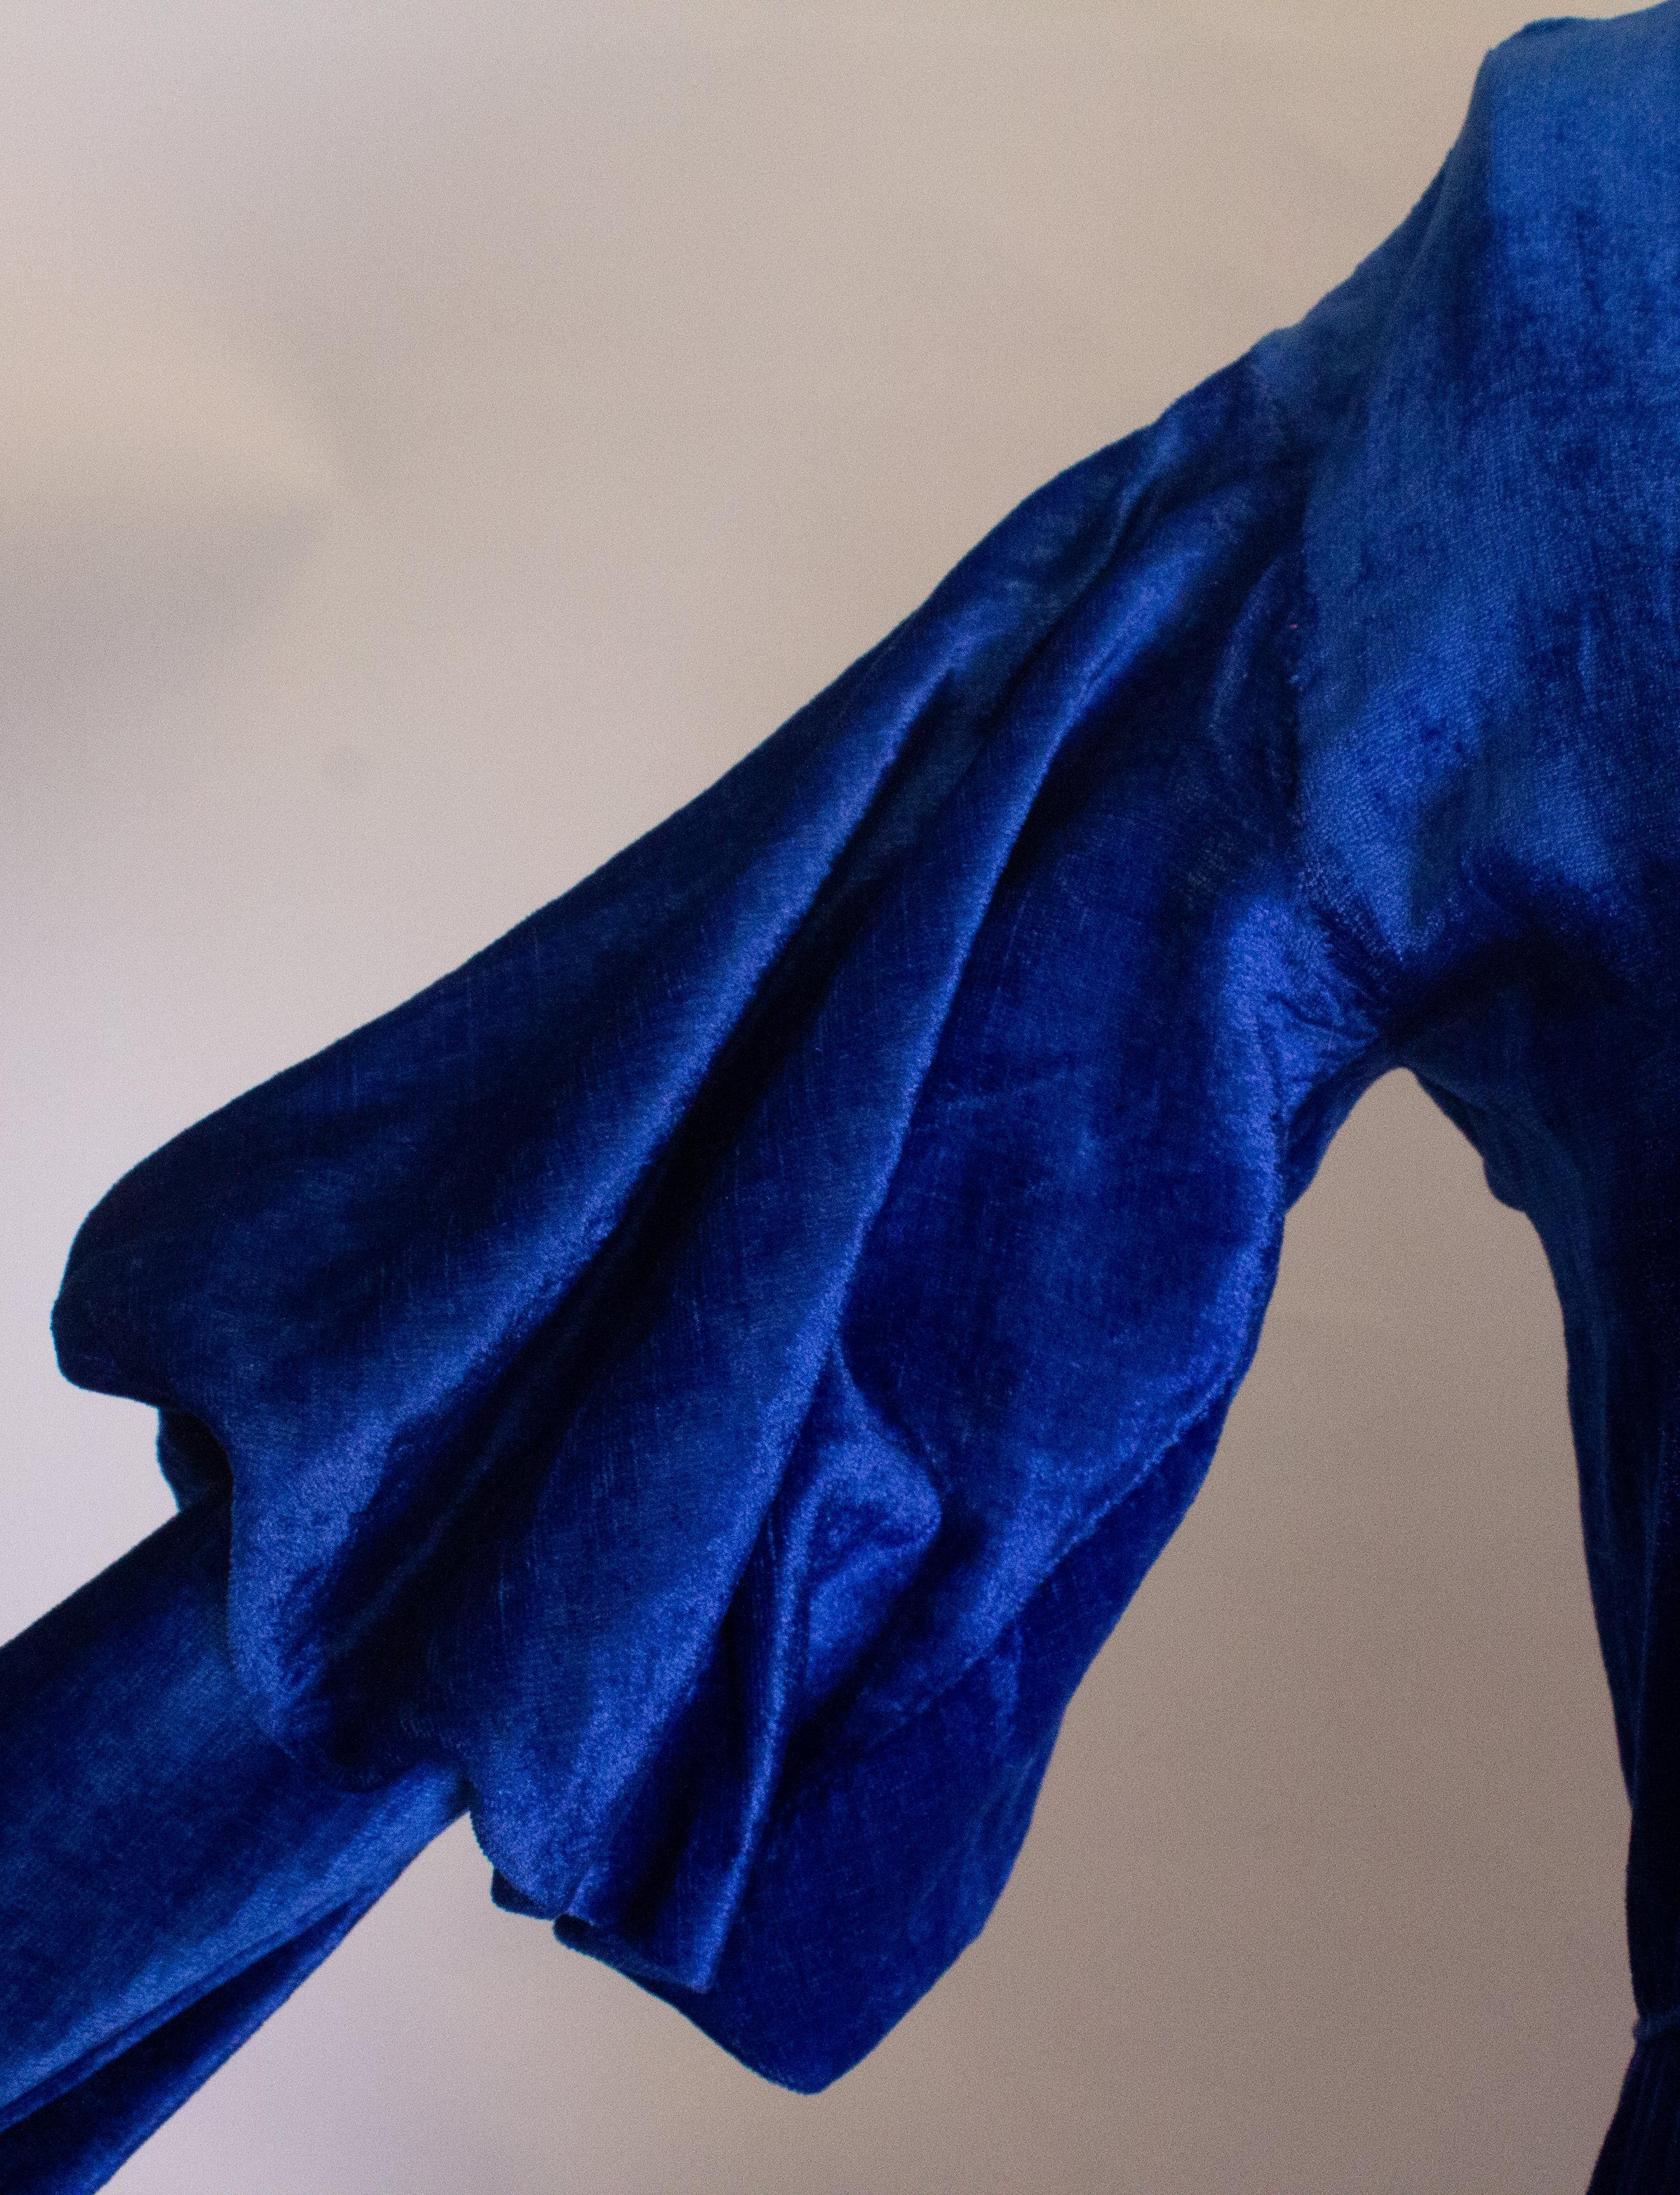 Une merveilleuse robe vintage dans un velours de soie bleu vibrant.  La robe a une encolure en V, des fermetures à boutons-pression et des manches en forme de bûche de mouton. Il a des poignets étroits qui pourraient  être ouvert.